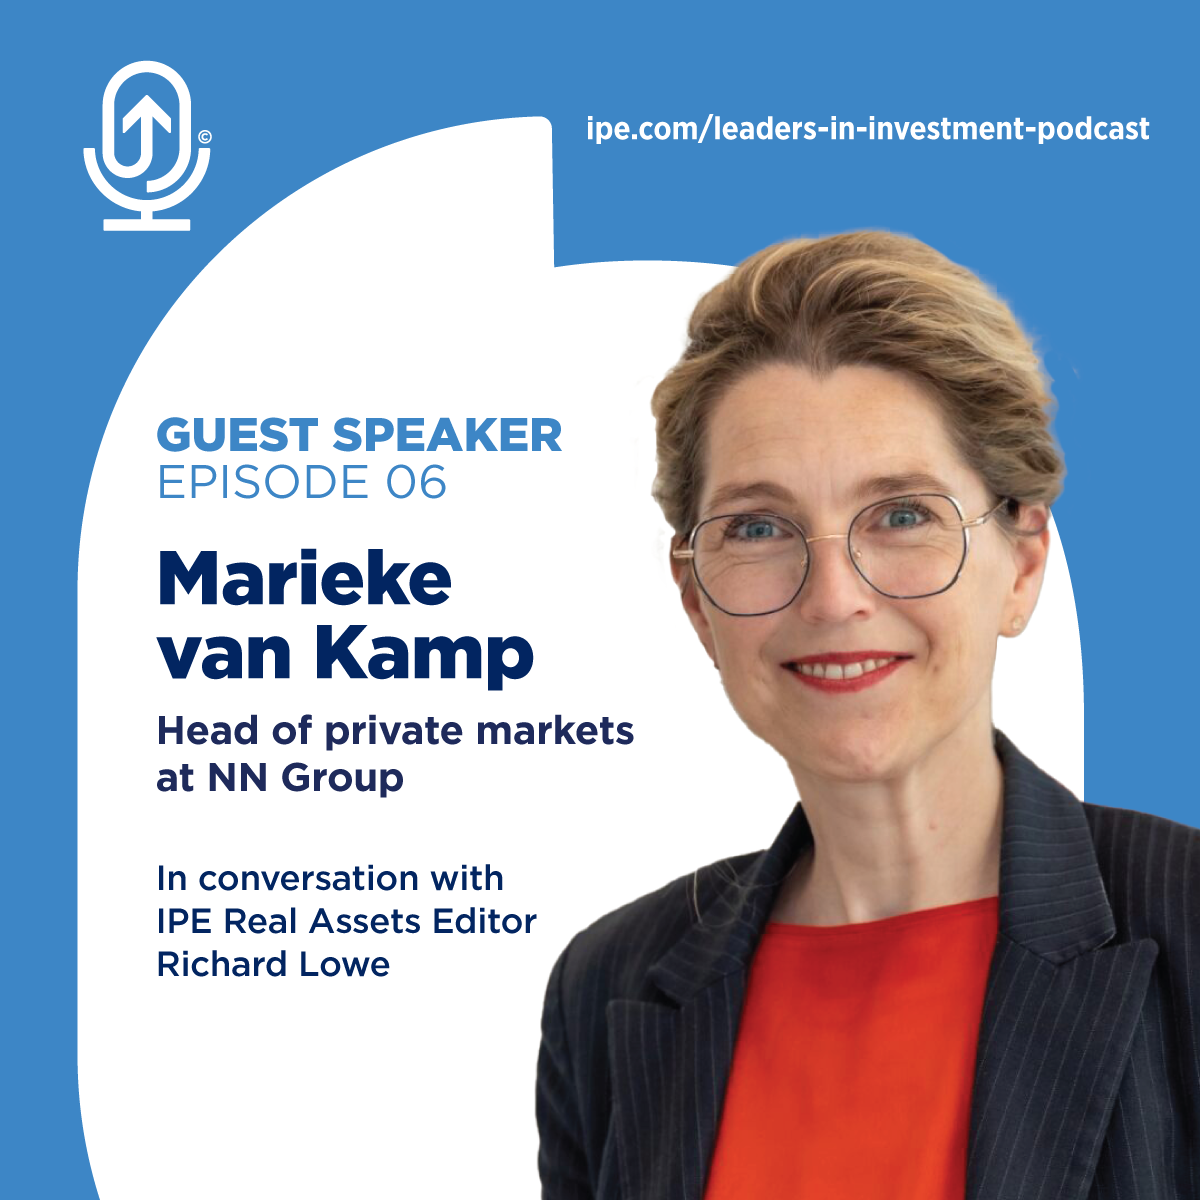 Marieke van Kamp - Head of Private Markets, NN Group